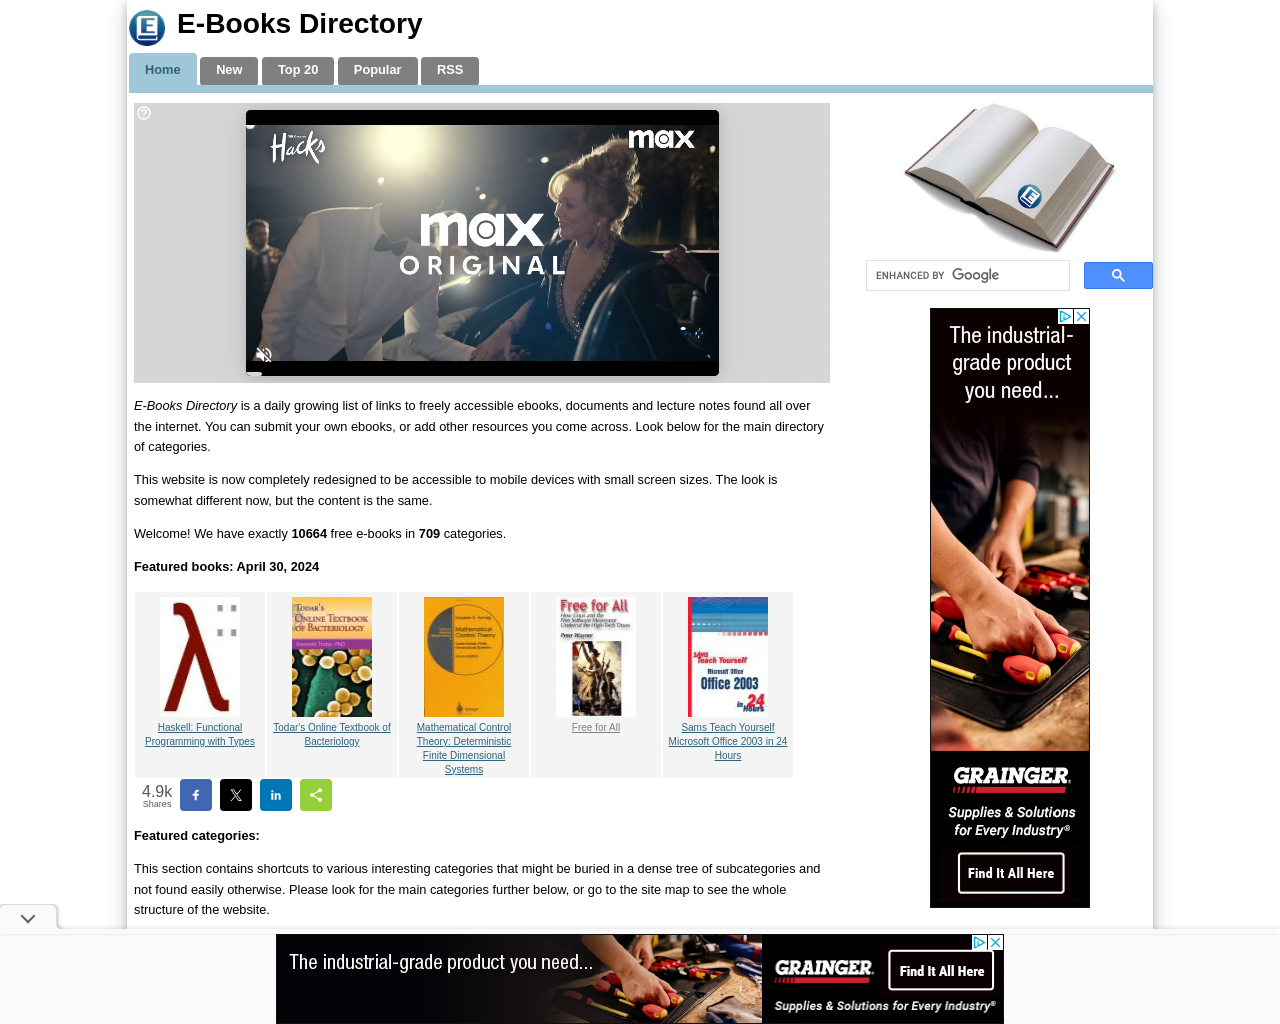 e-booksdirectory.com